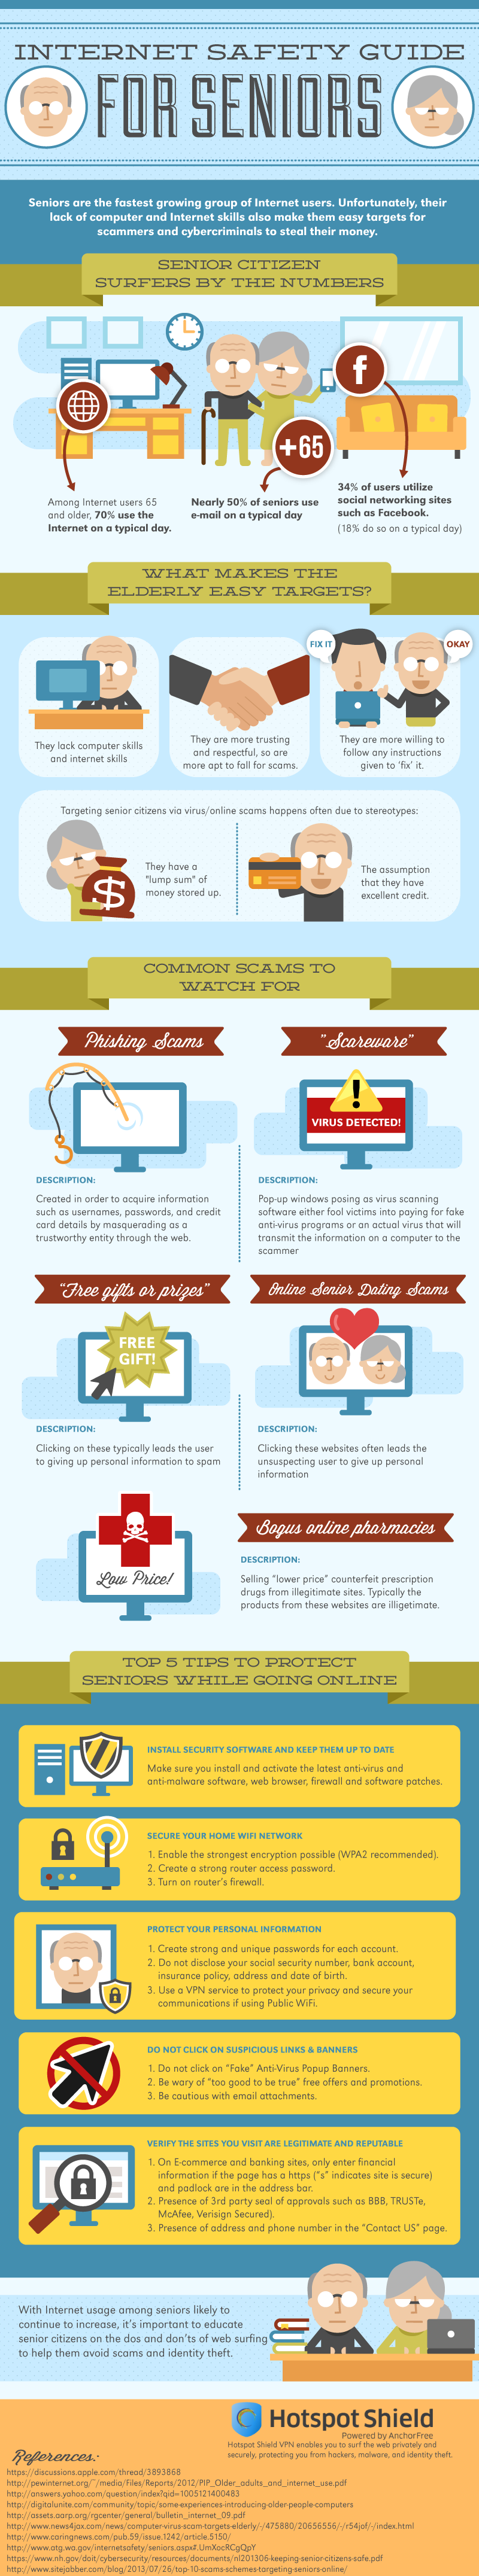 Internet safety tips for seniors